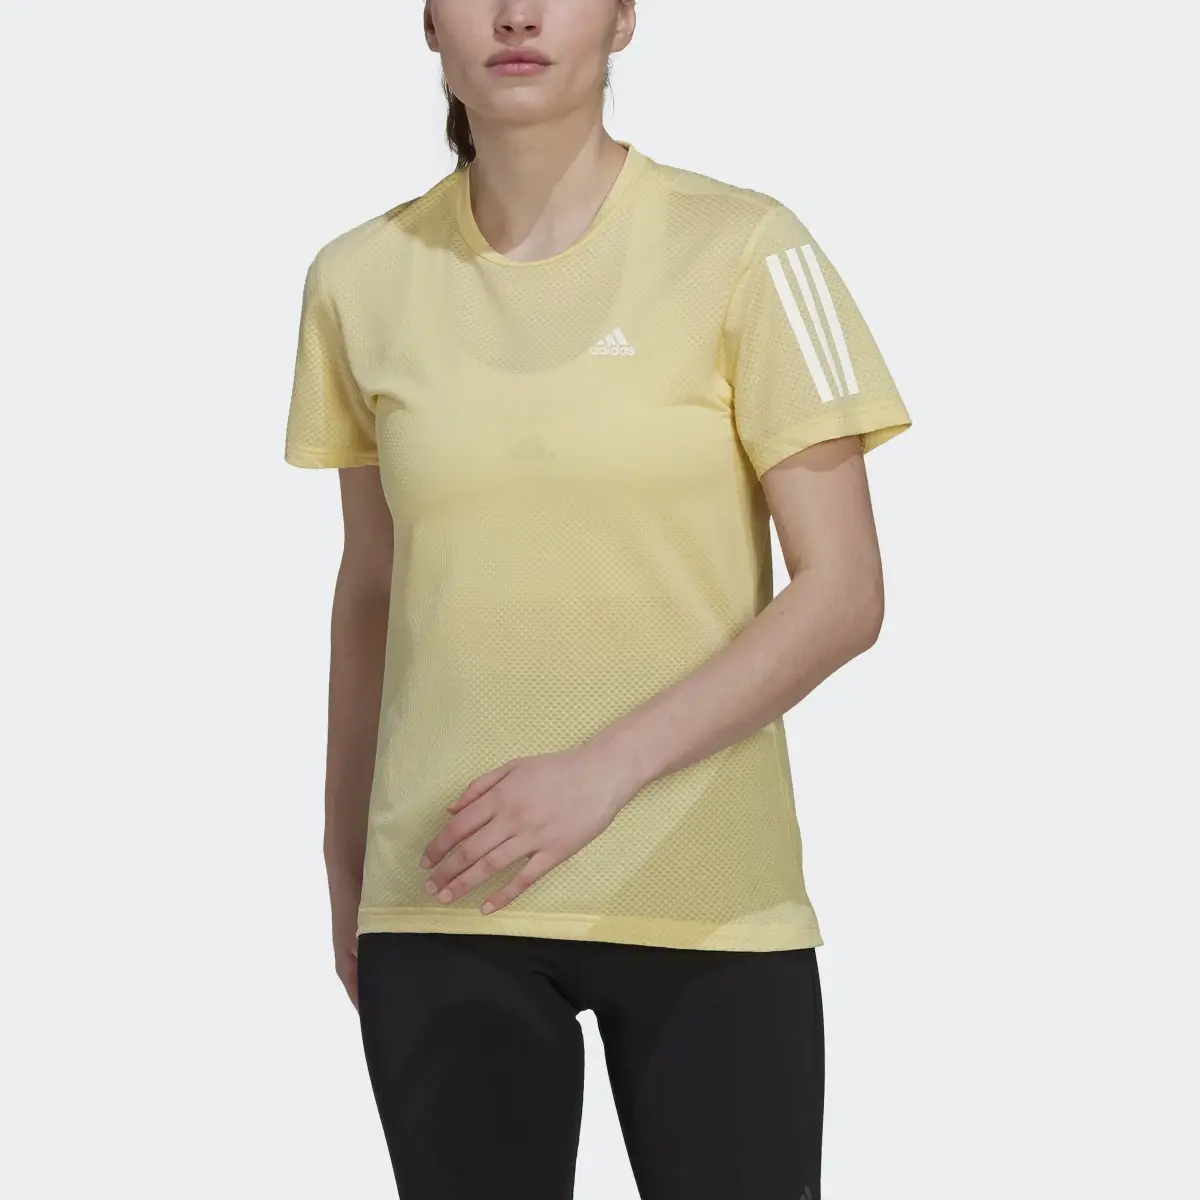 Adidas Own the Run Cooler T-Shirt. 1